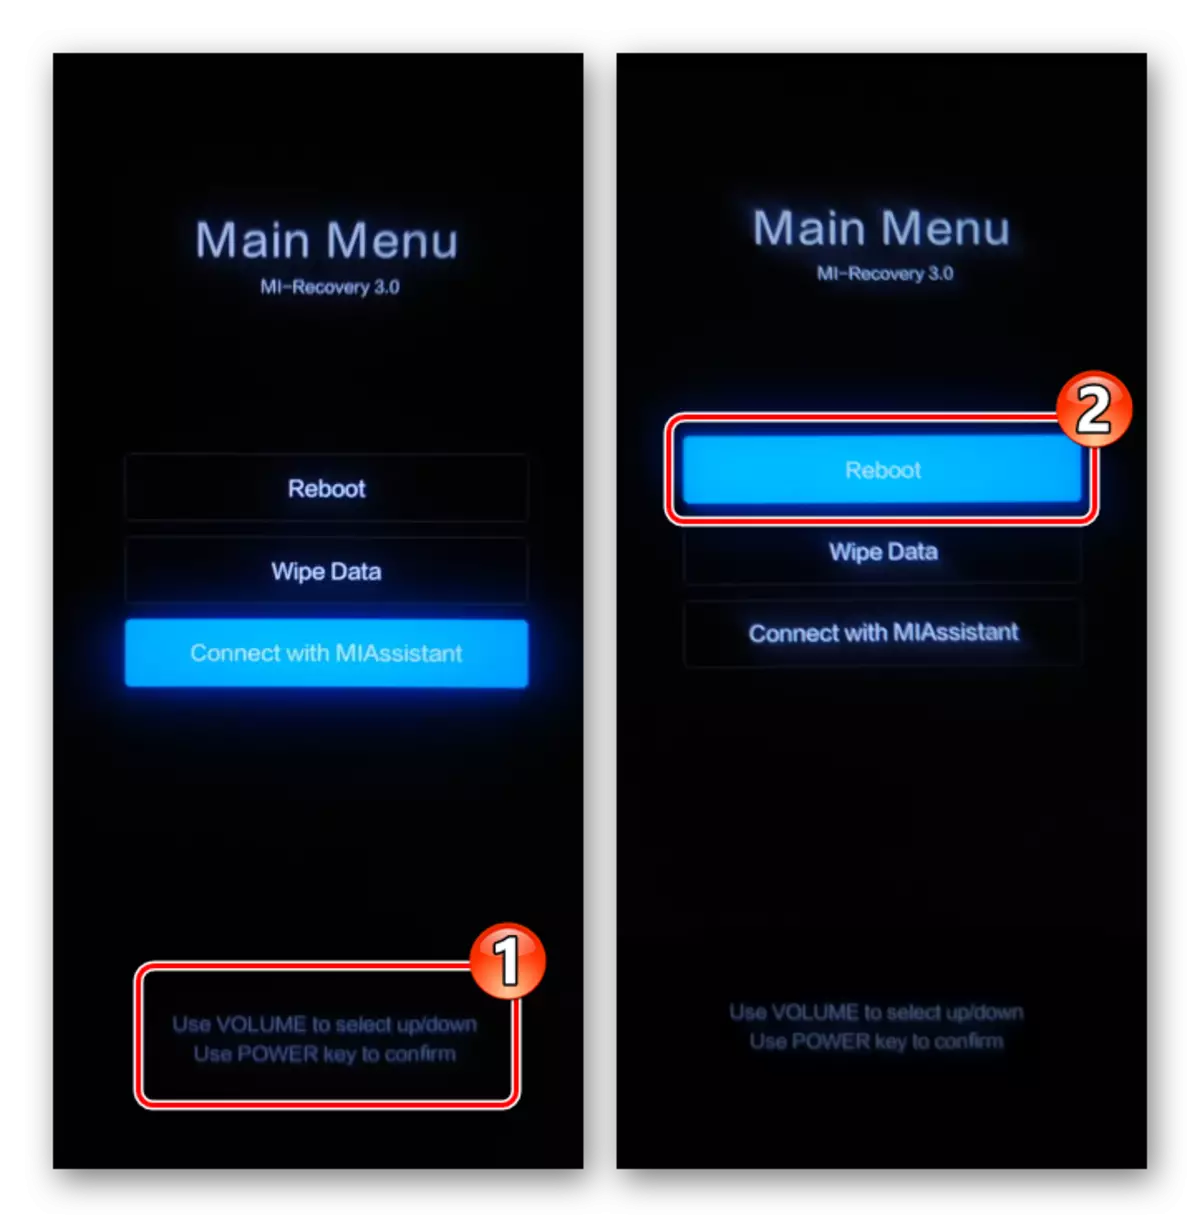 Menu główne Xiaomi MIUI (odzyskiwanie fabryczne) - Sterowanie za pomocą przycisków sprzętowych - Wybierz funkcję Reboot